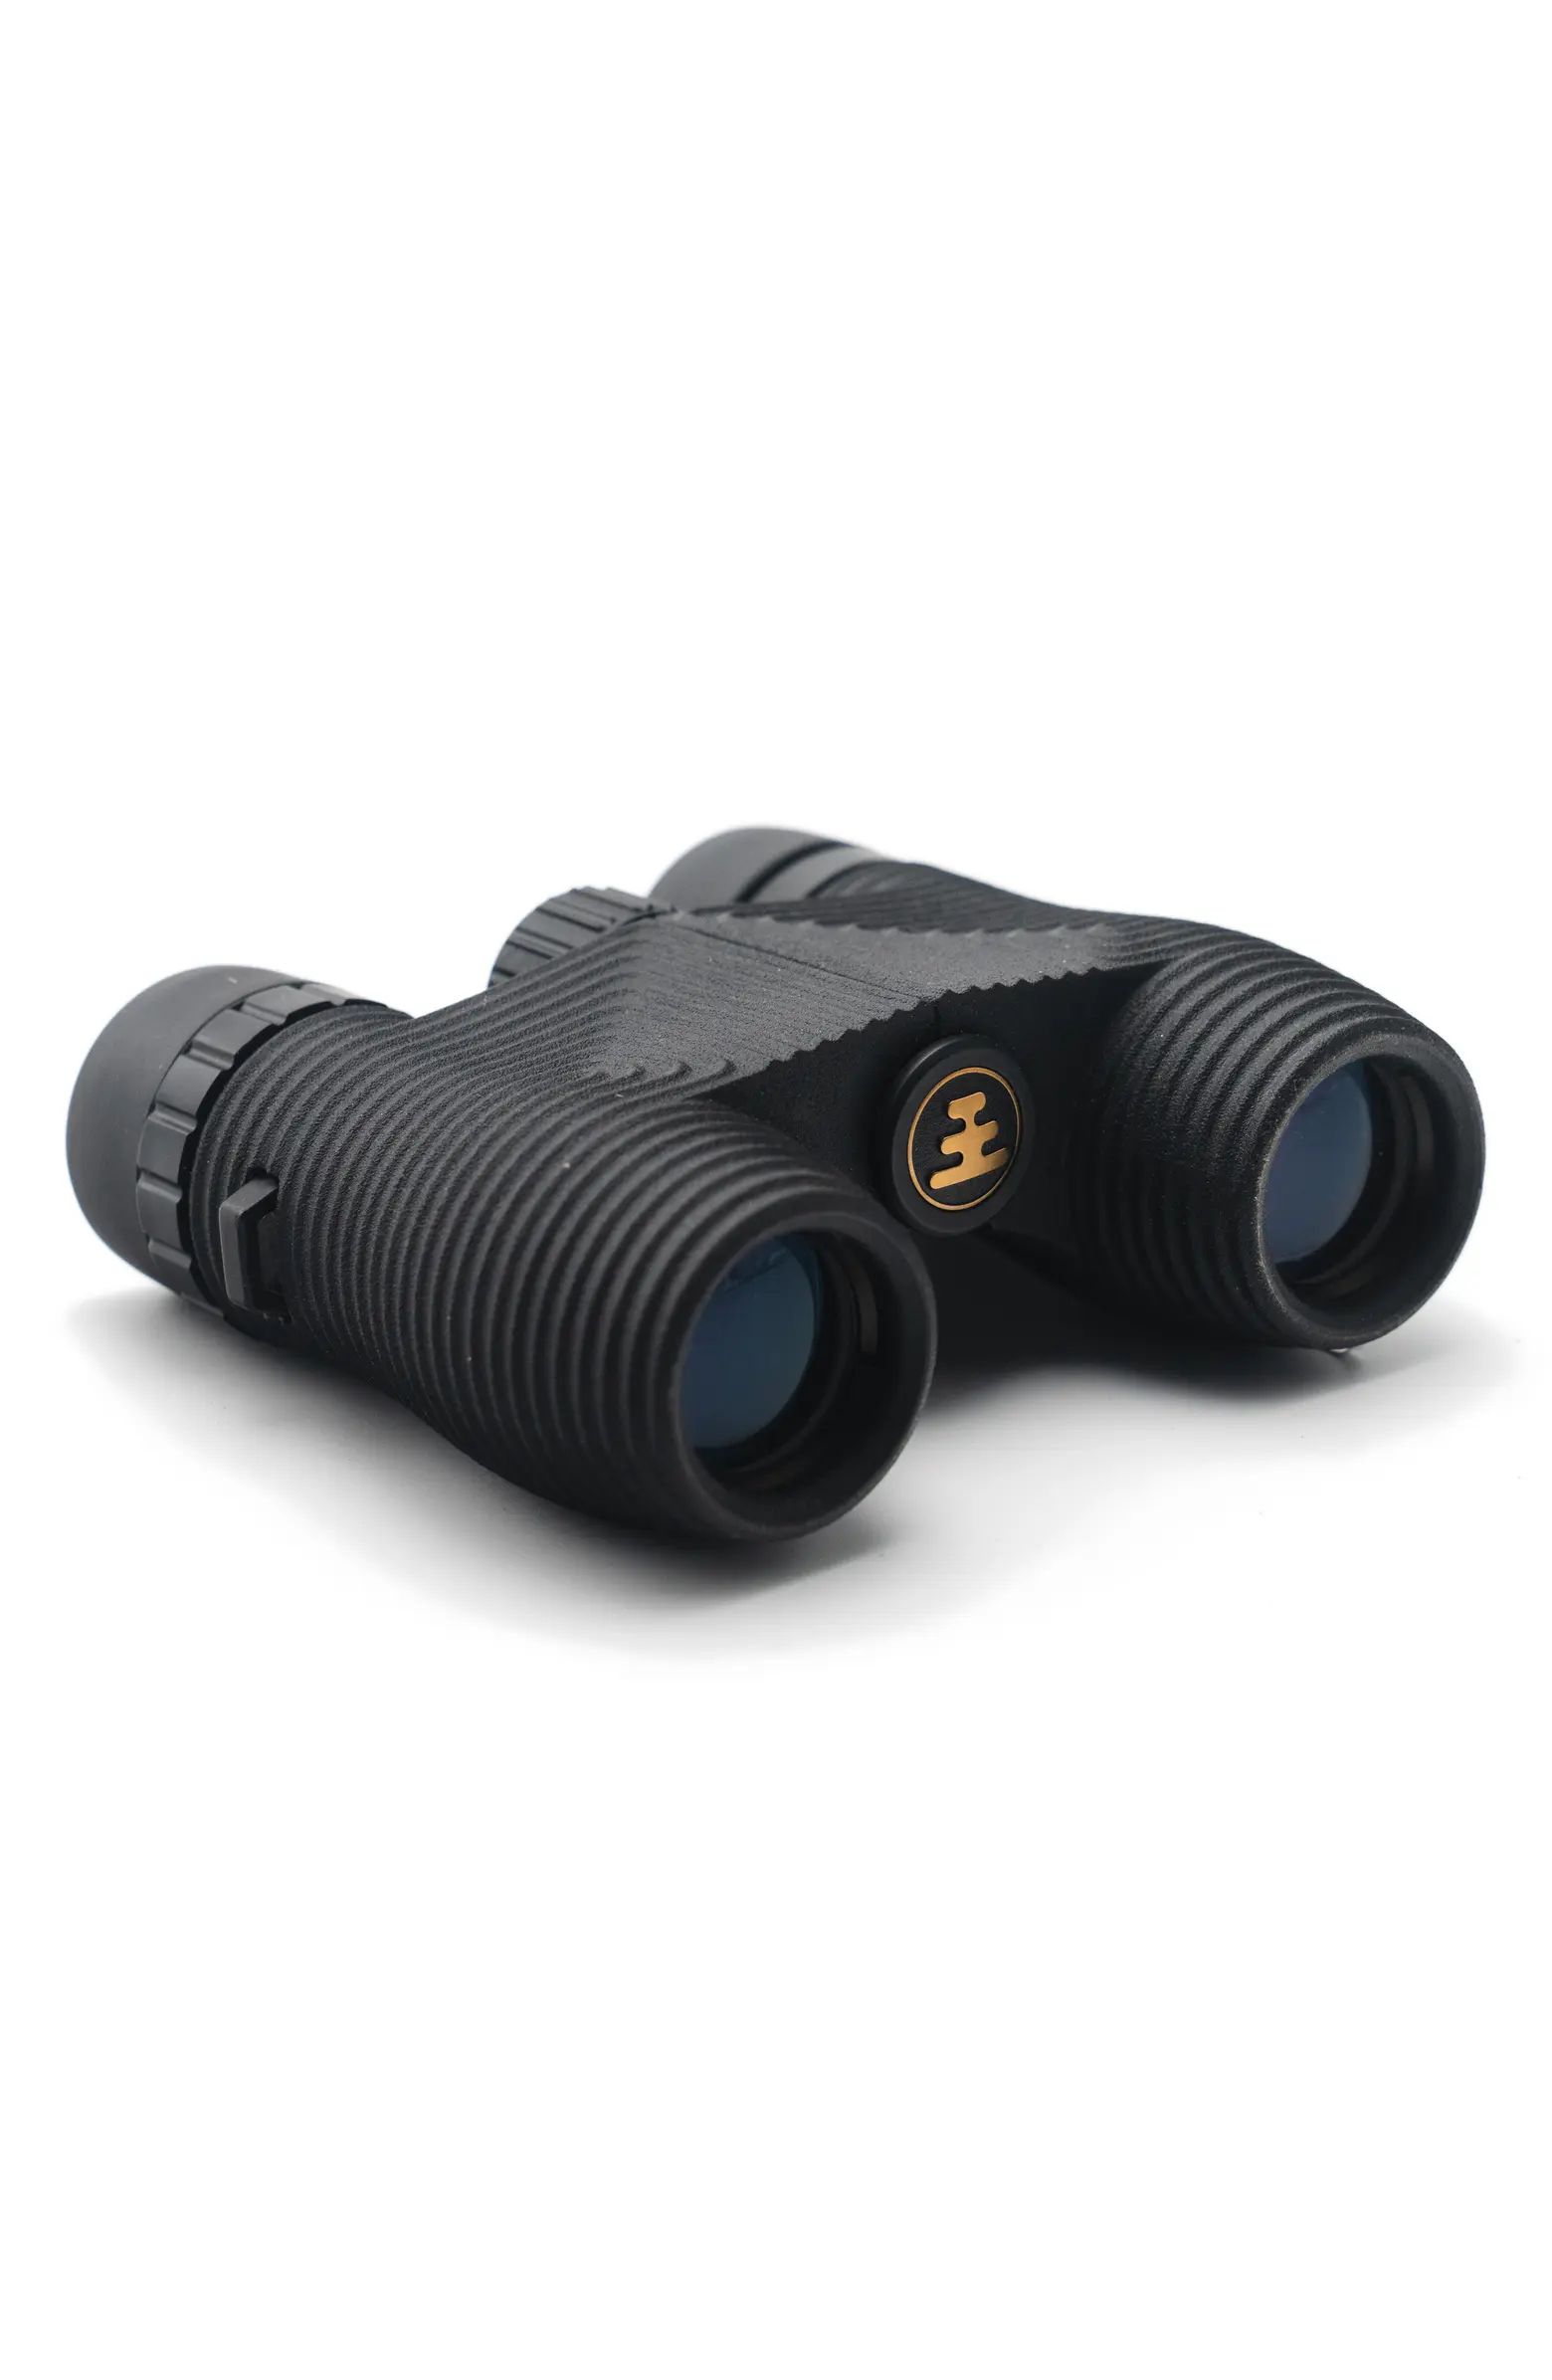 NOCS Standard Issue 8 x 25 Waterproof Binoculars | Nordstrom | Nordstrom